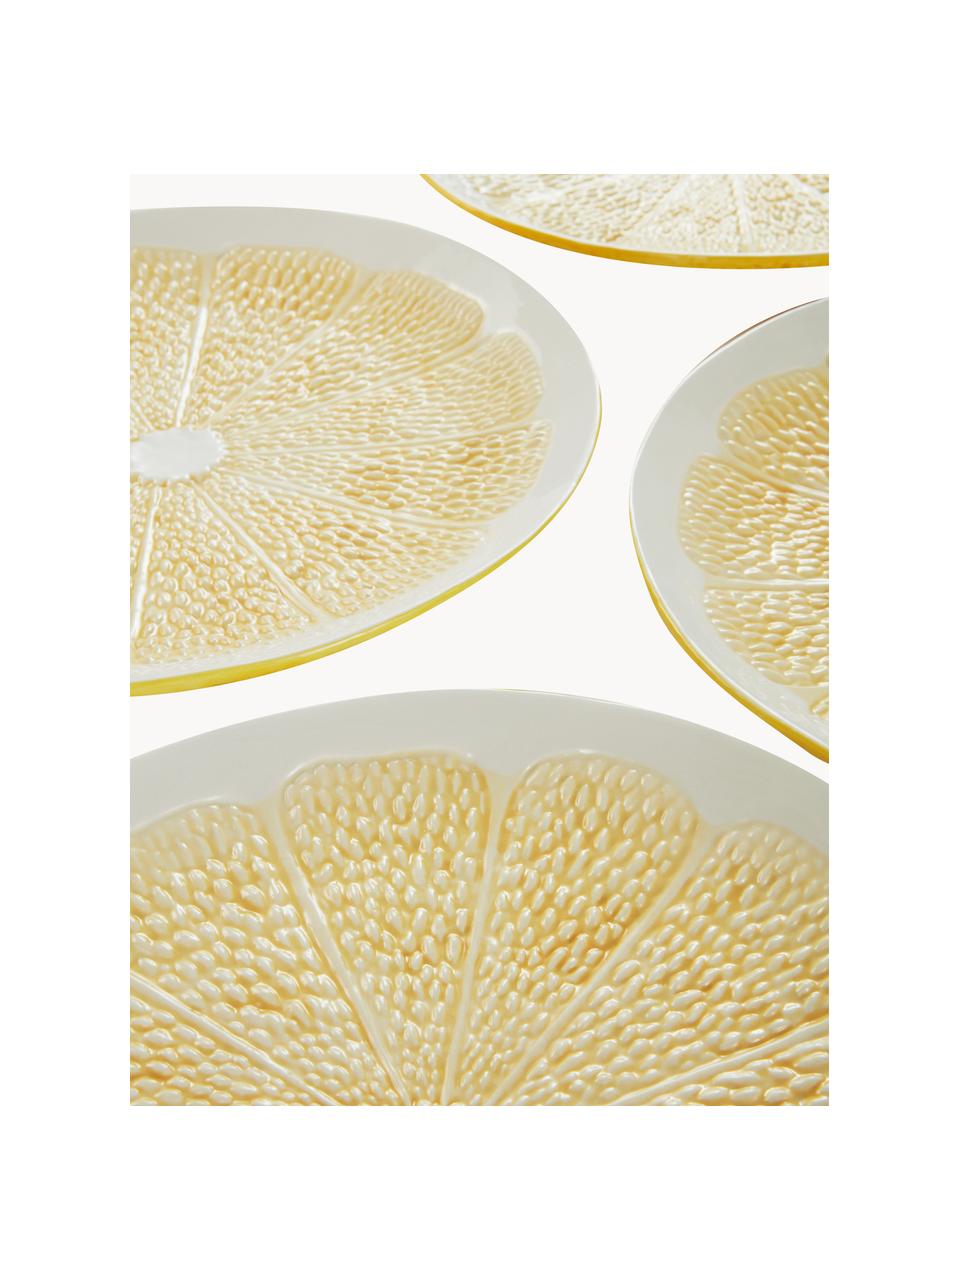 Speiseteller Lemon, 4 Stück, Keramik, Hellgelb, Weiß, Ø 27 cm